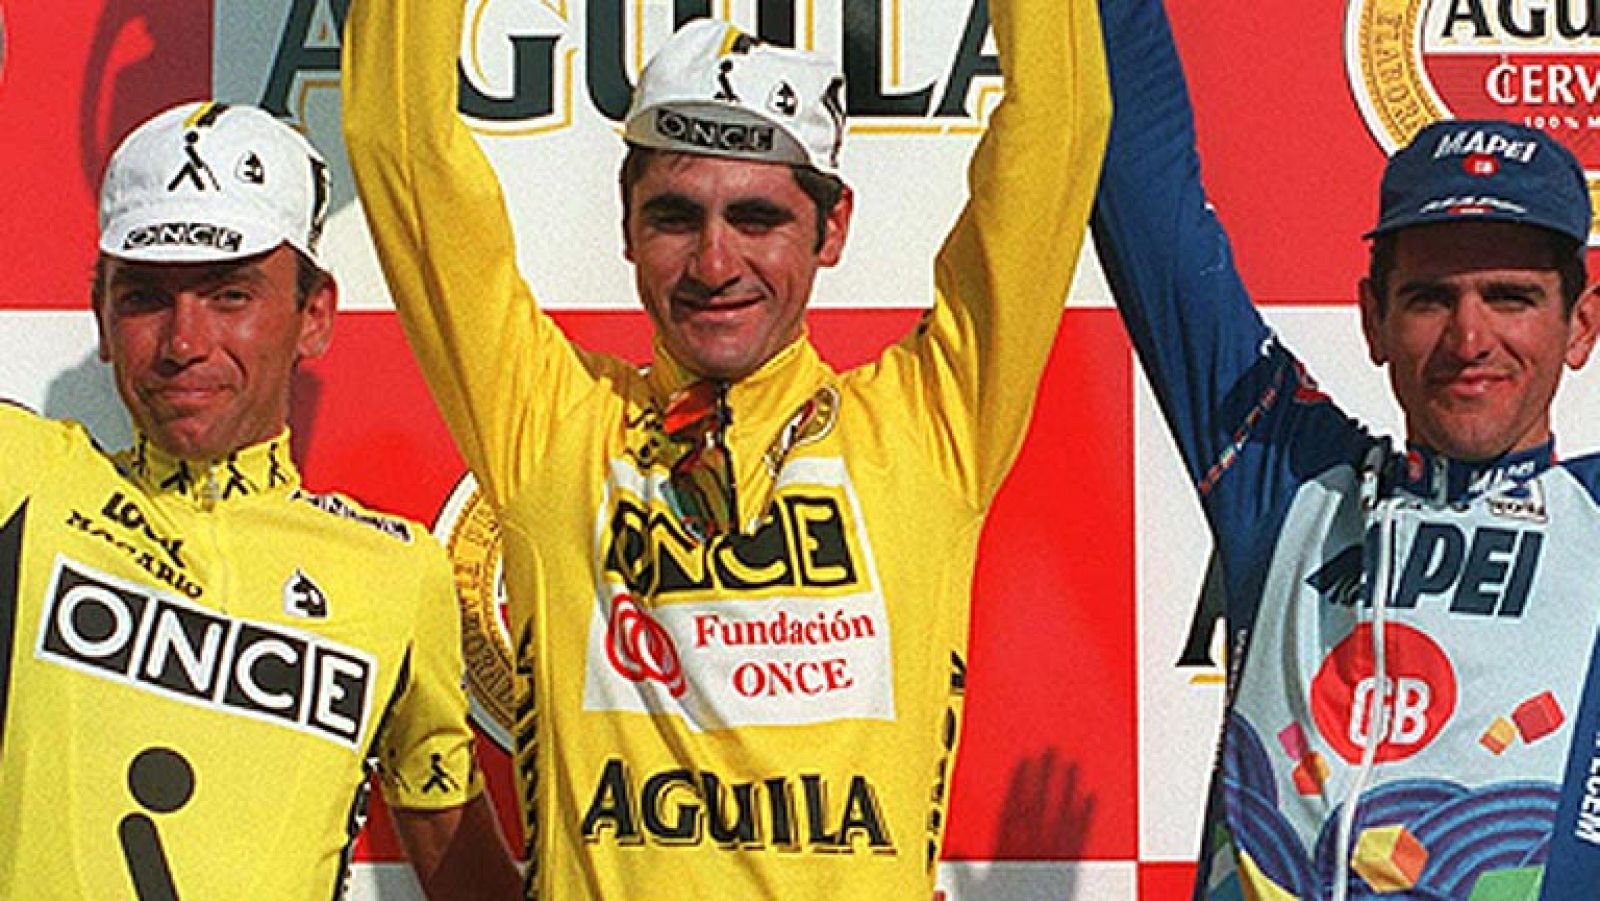 El ciclista francés Laurent Jalabert, en el podio de la Vuelta a España 1995, junto a Johan Bruyneel y Abraham Olano.